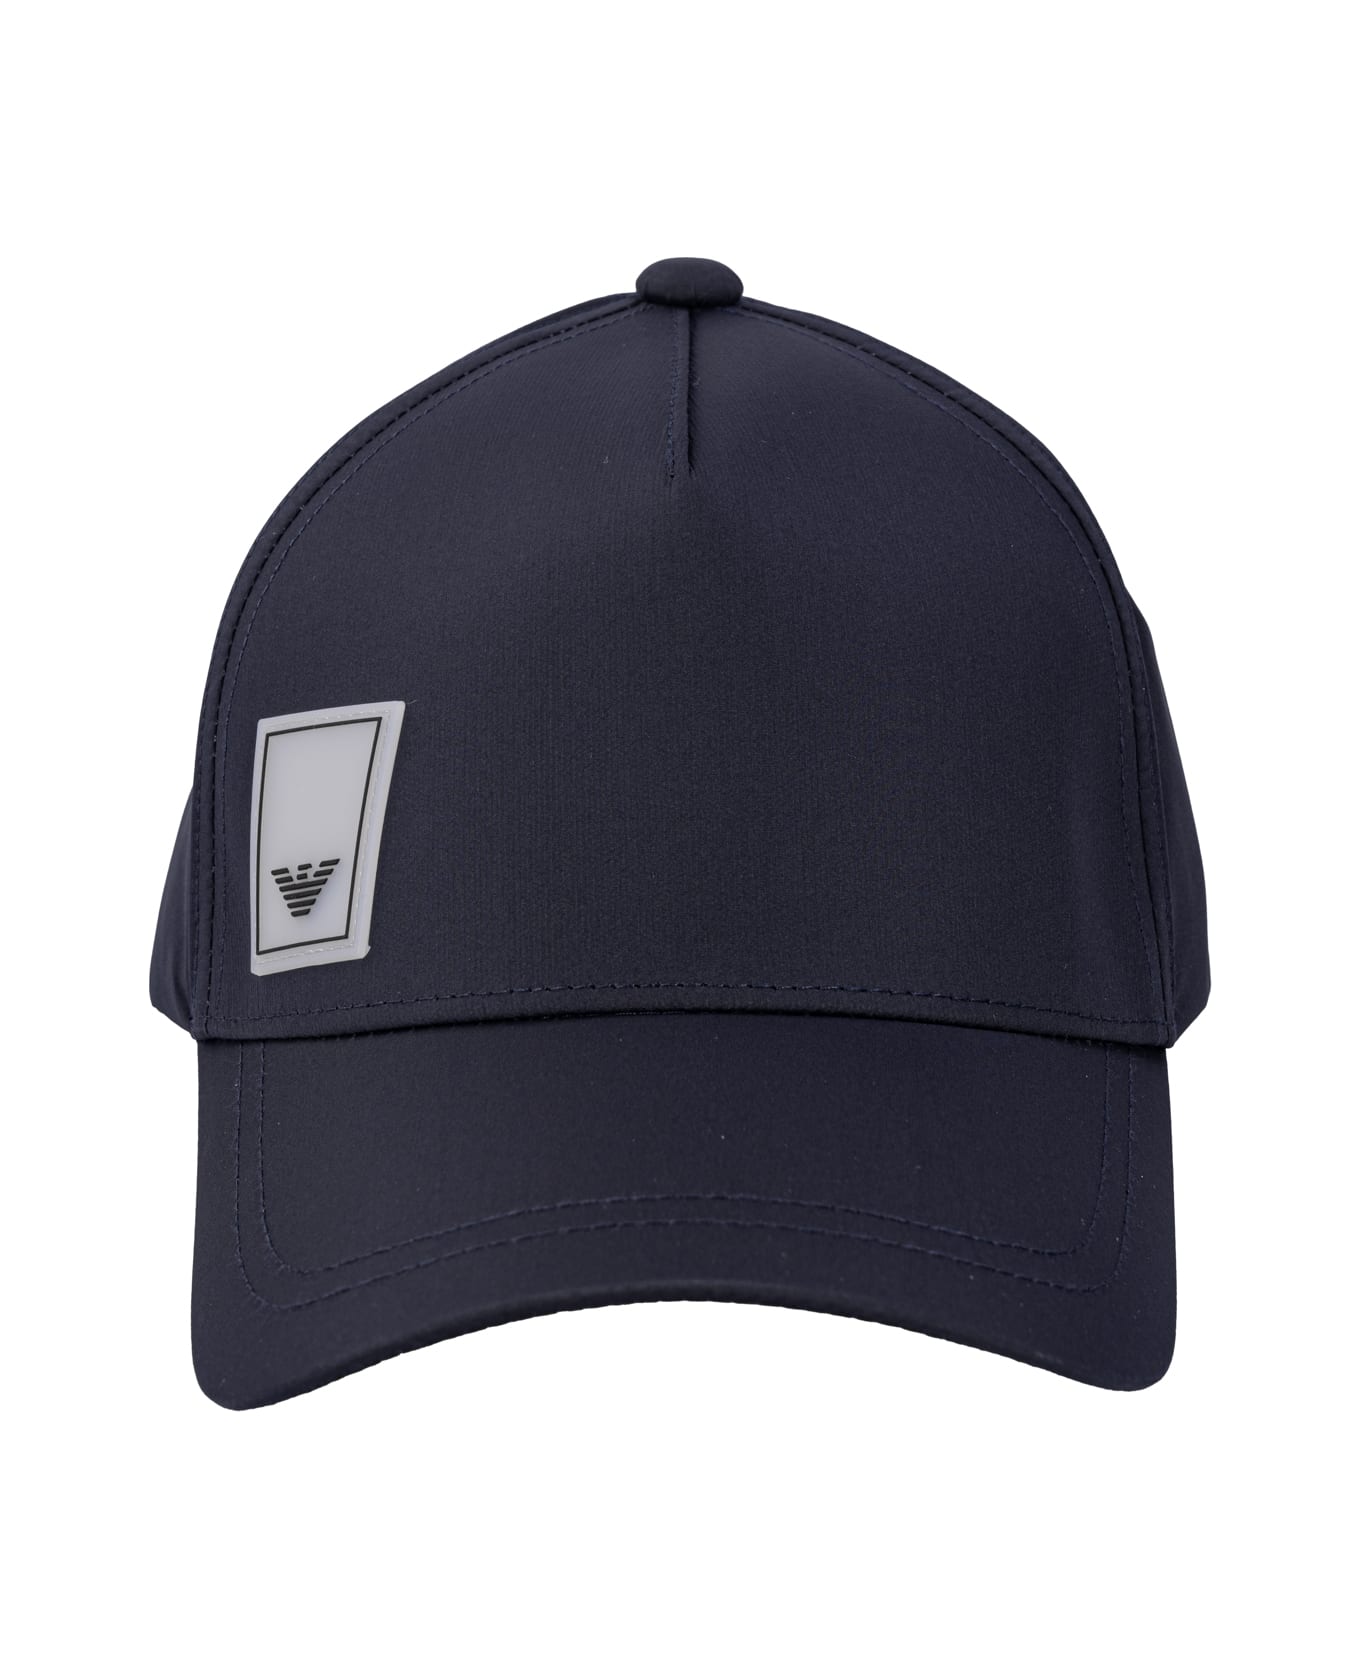 Emporio Armani Hats Blue - Blu 帽子